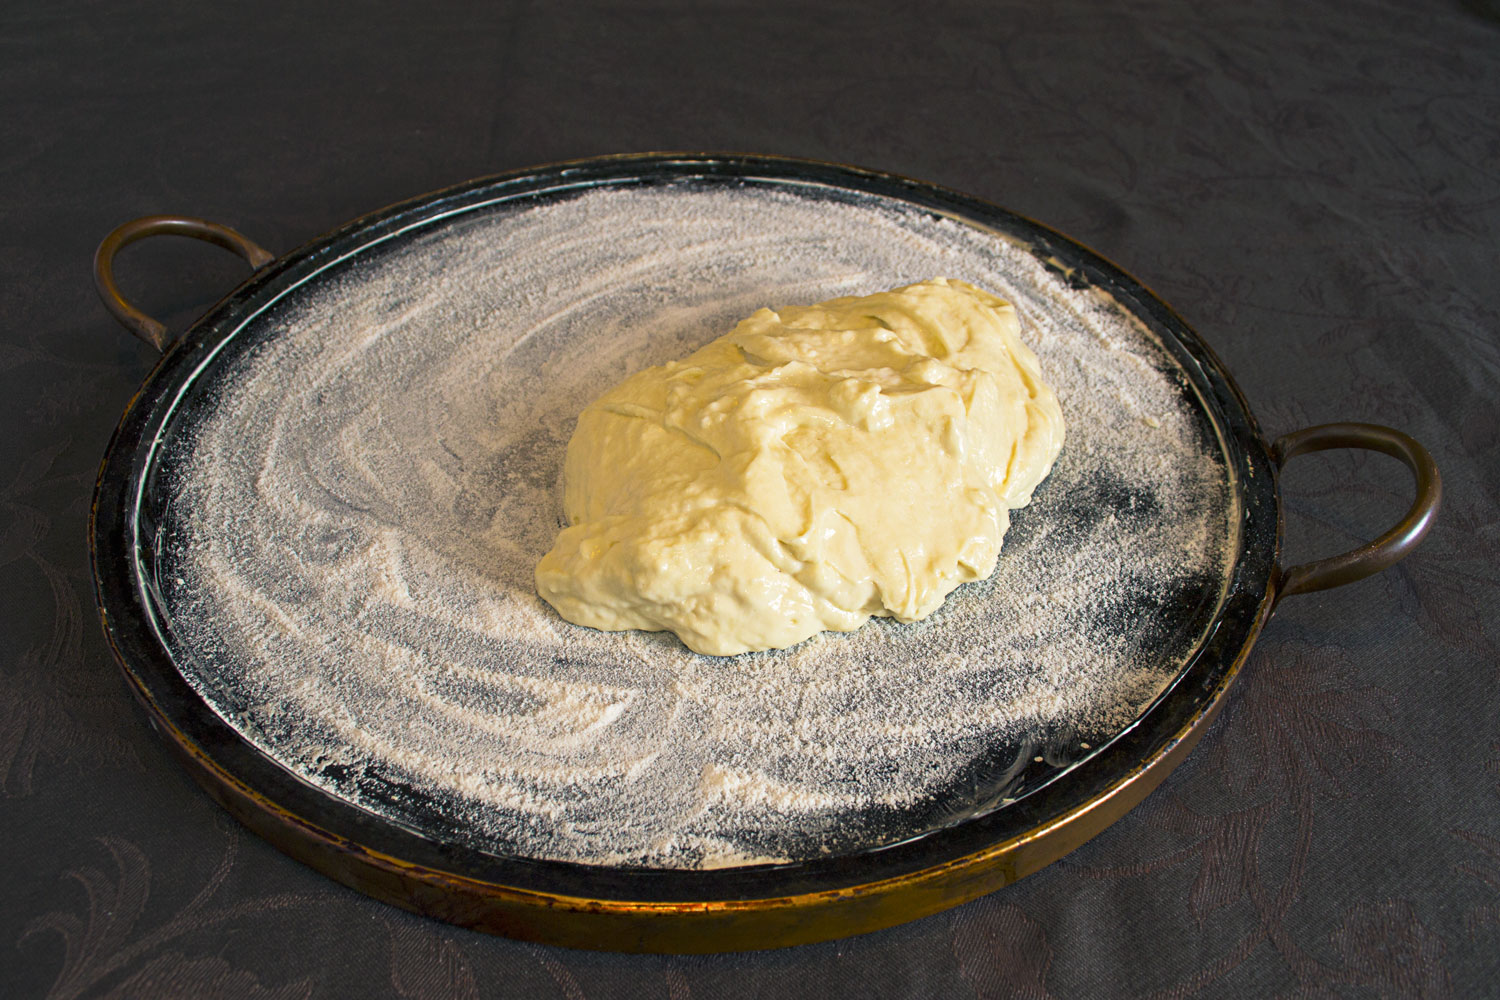 Forma de pedra untada com margarina e farinha de arroz